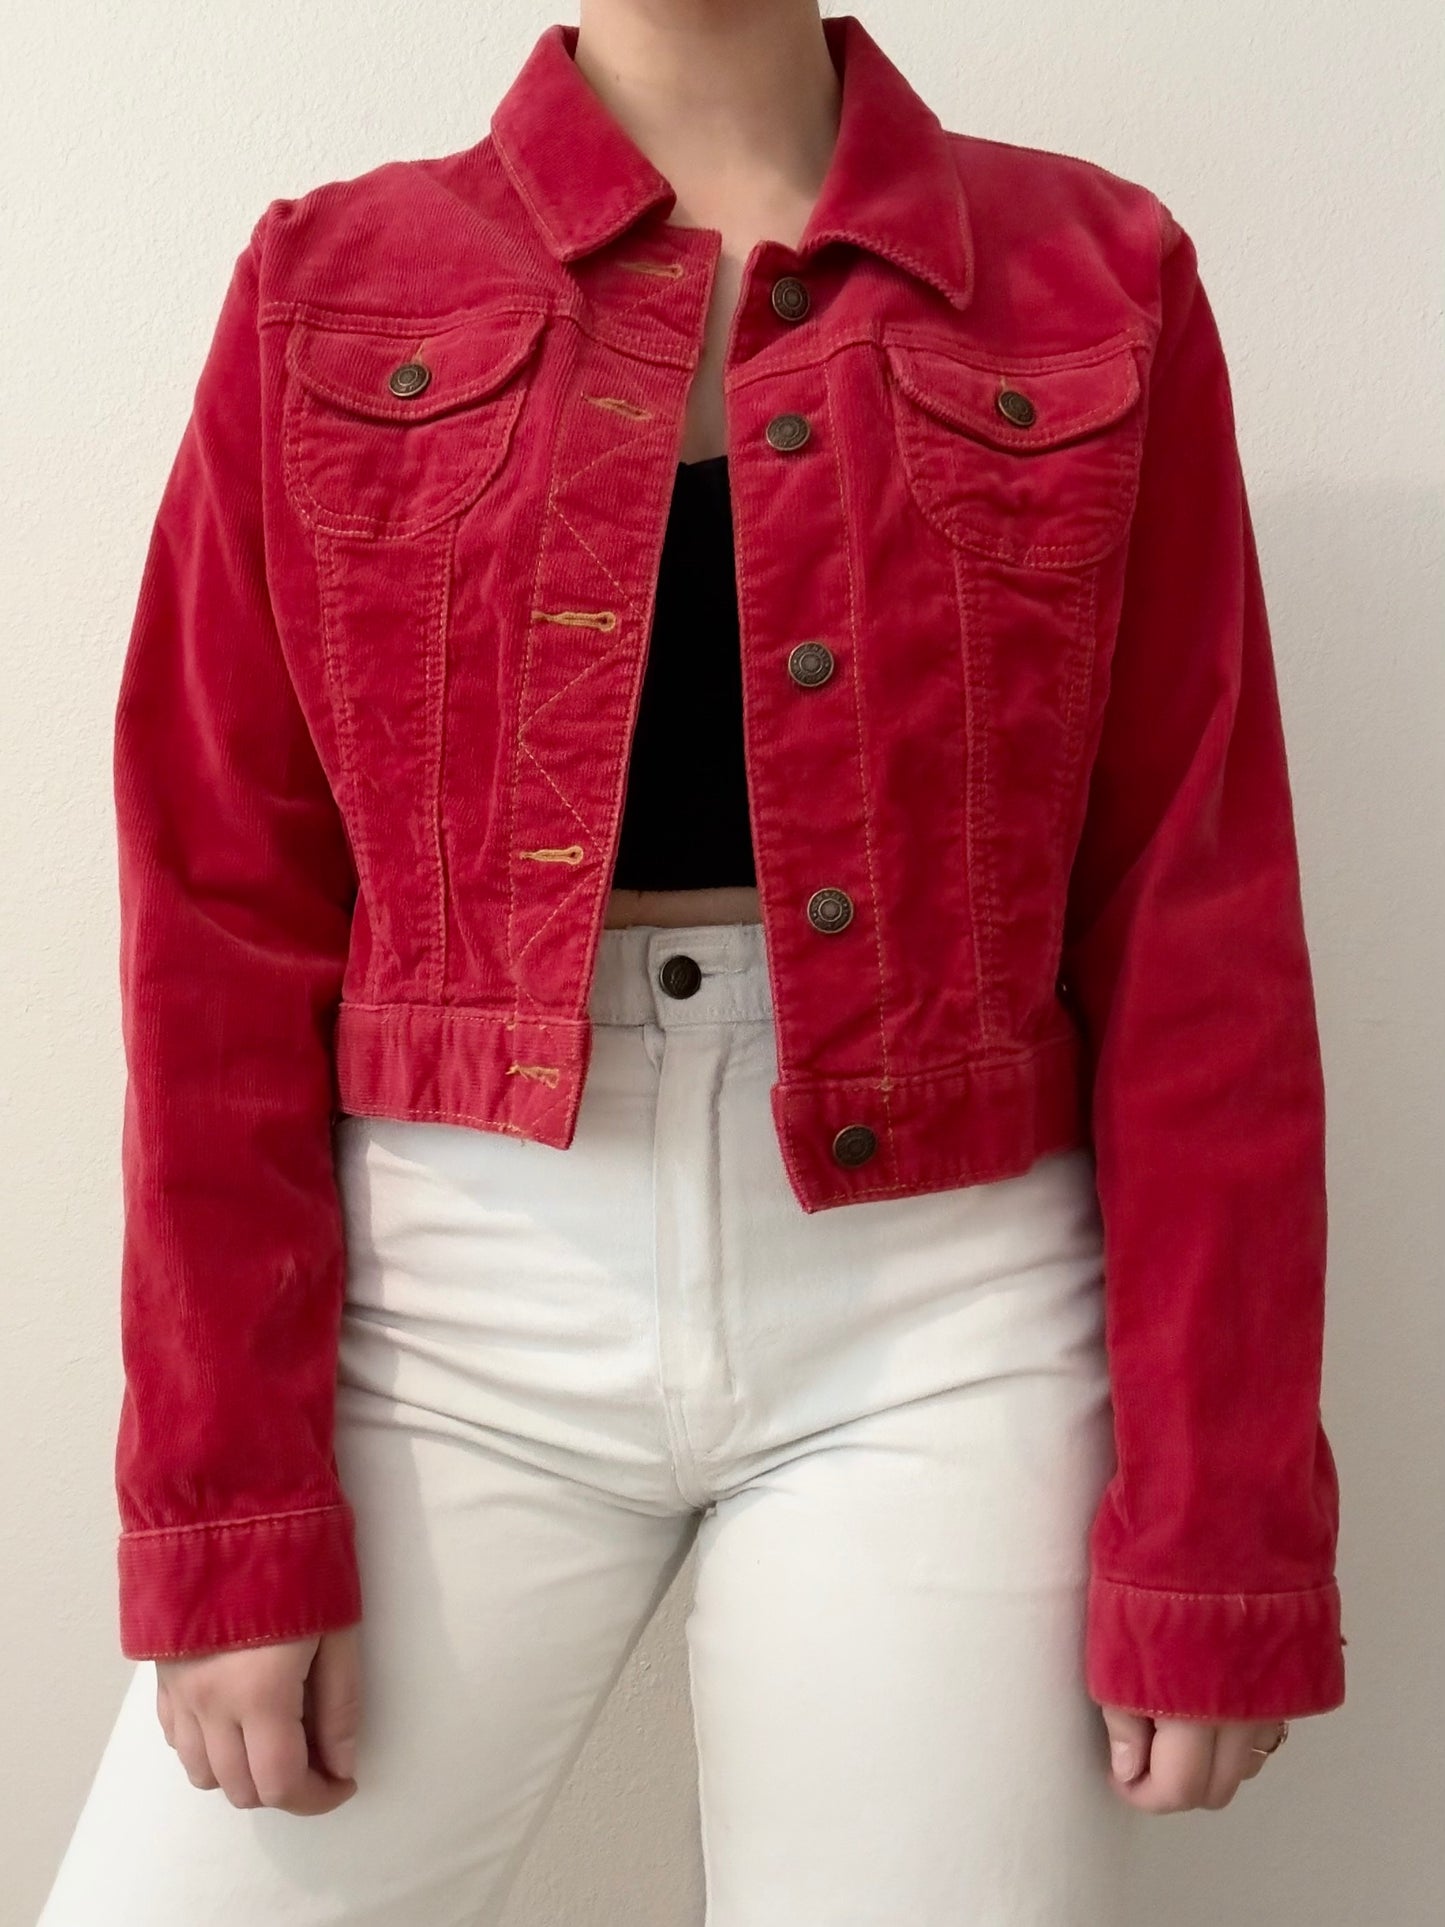 Vintage Red Corduroy Jacket (S)